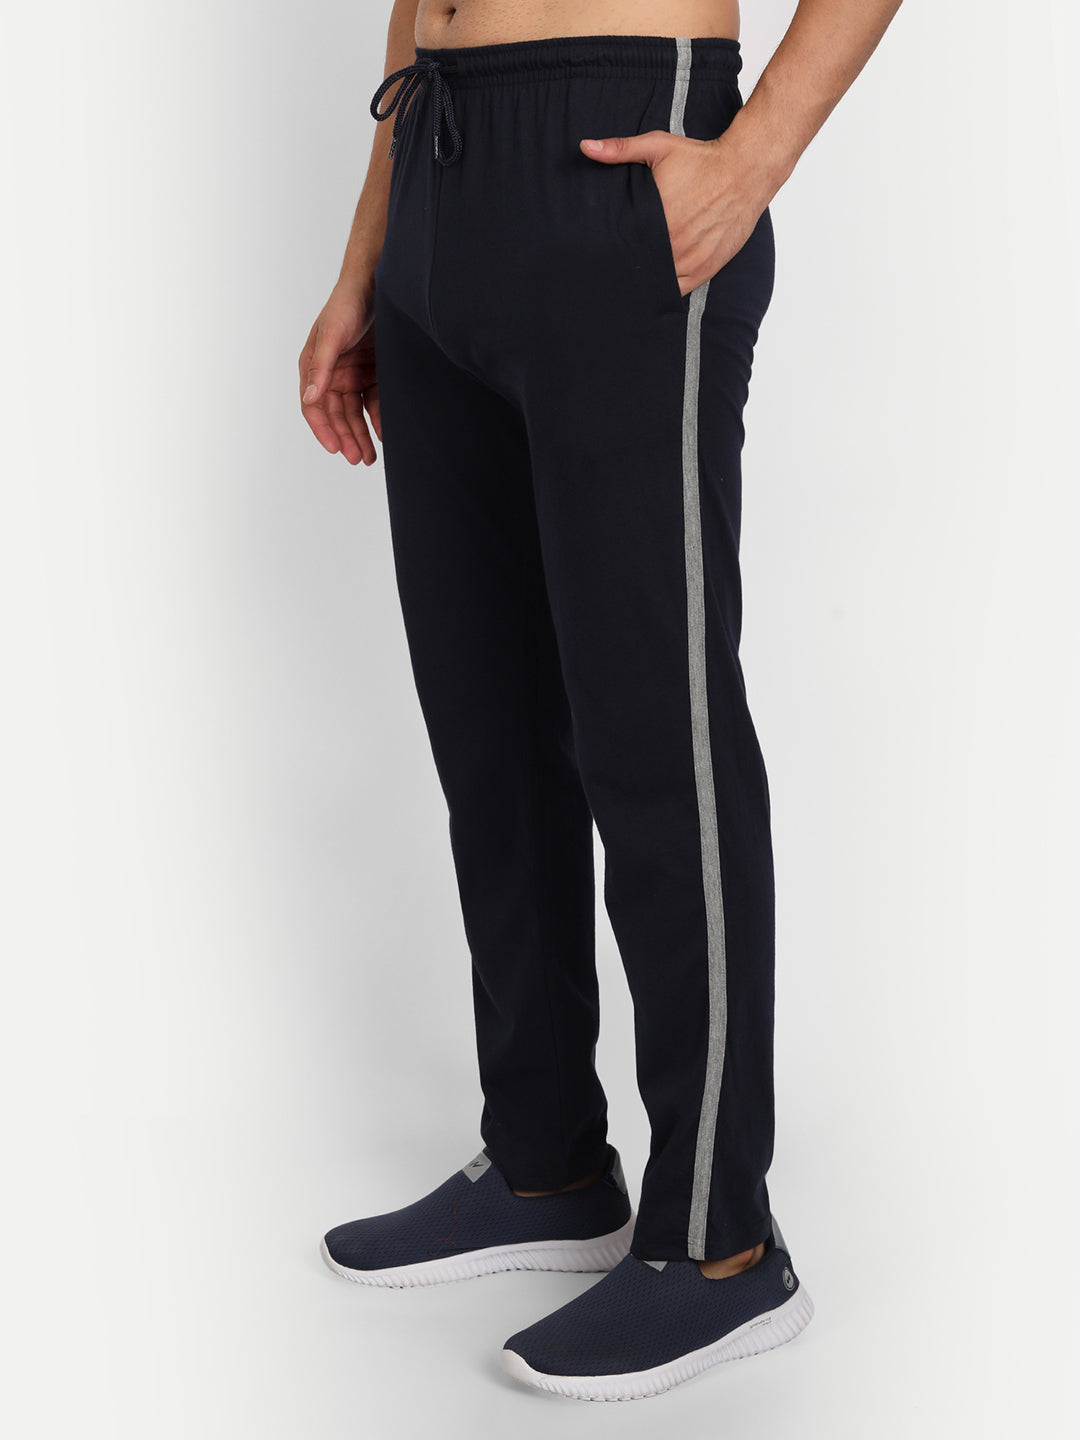 Regular Fit Sweatpants - Black - Men | H&M US